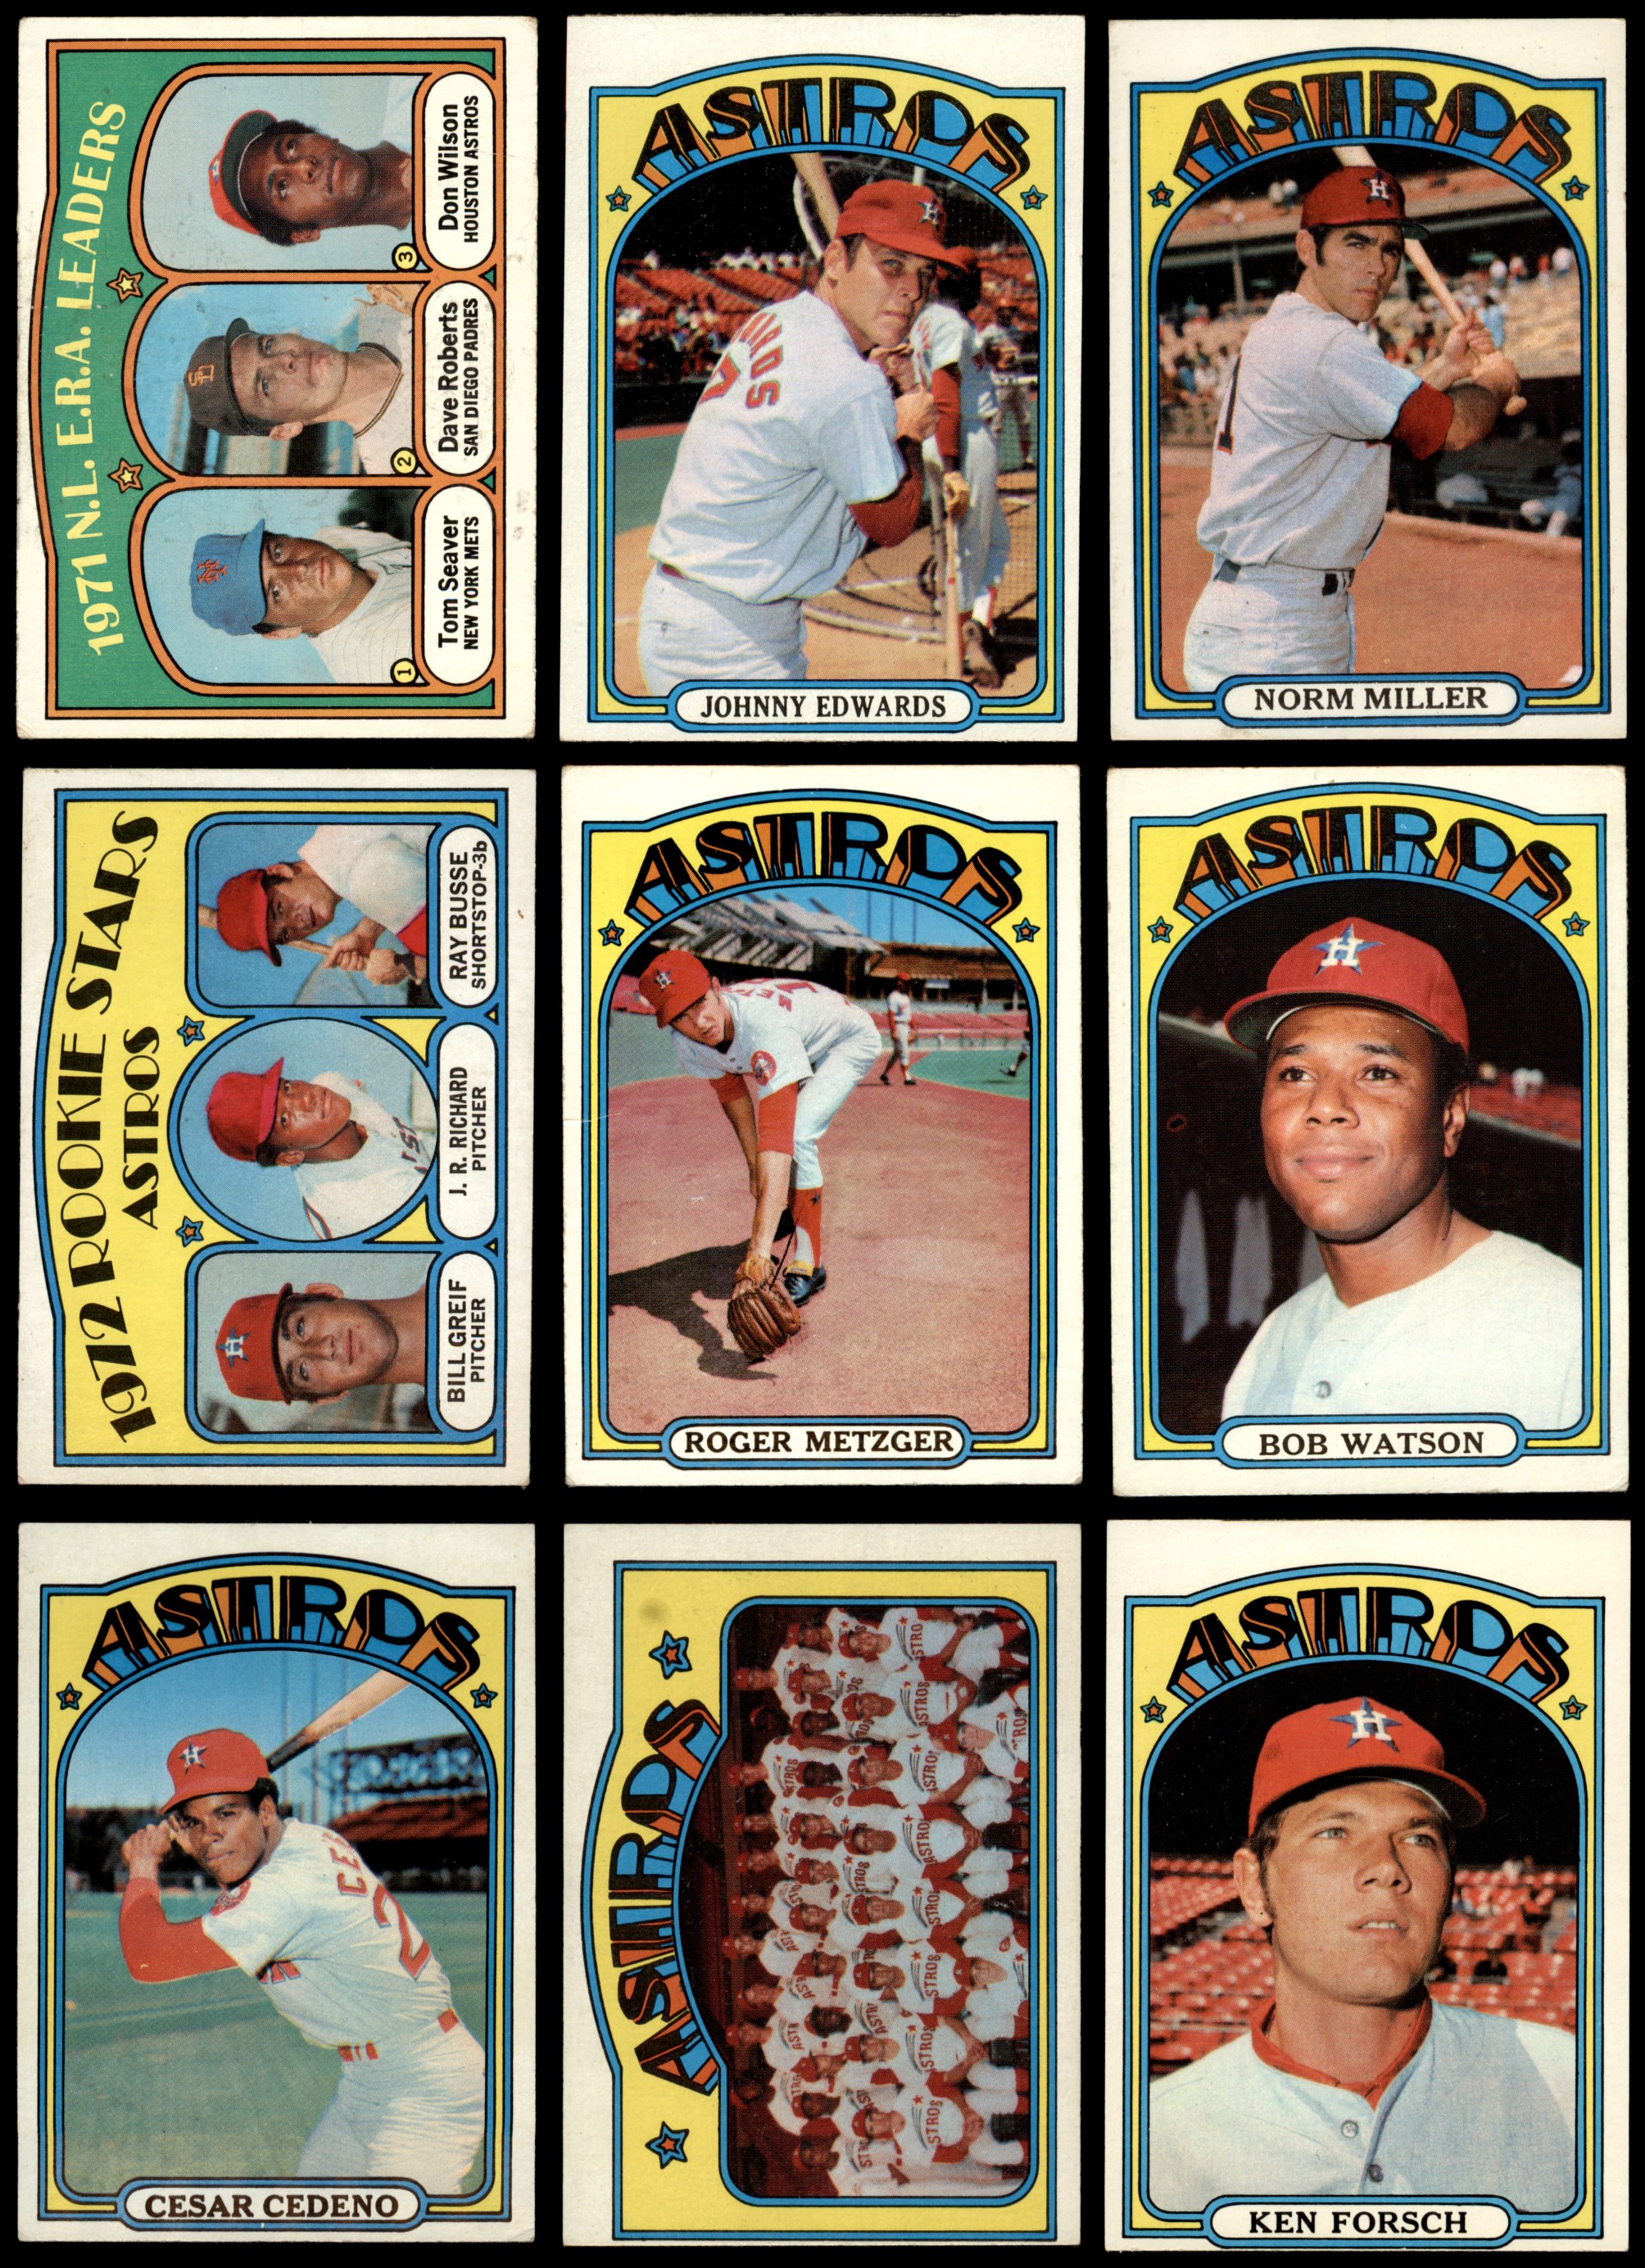 1972 Topps Houston Astros Team Set 5.5 - EX+